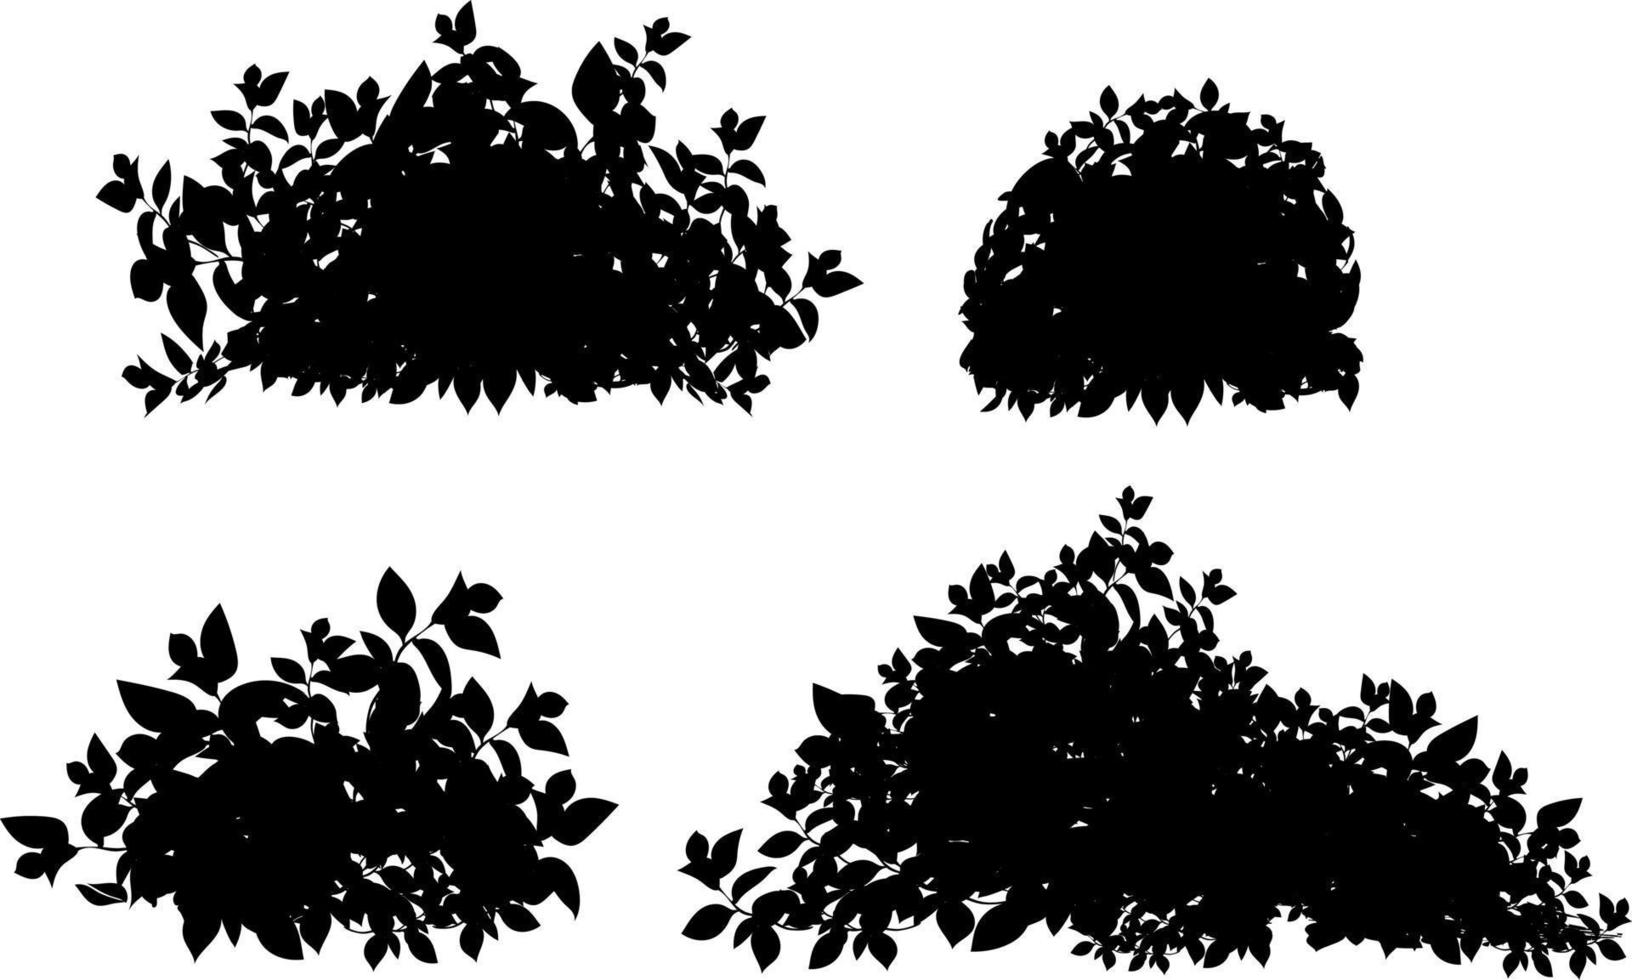 reeks van sier- zwart fabriek in de het formulier van een hedge.realistisch tuin struik, seizoensgebonden struik, buxus, boom kroon struik gebladerte. vector